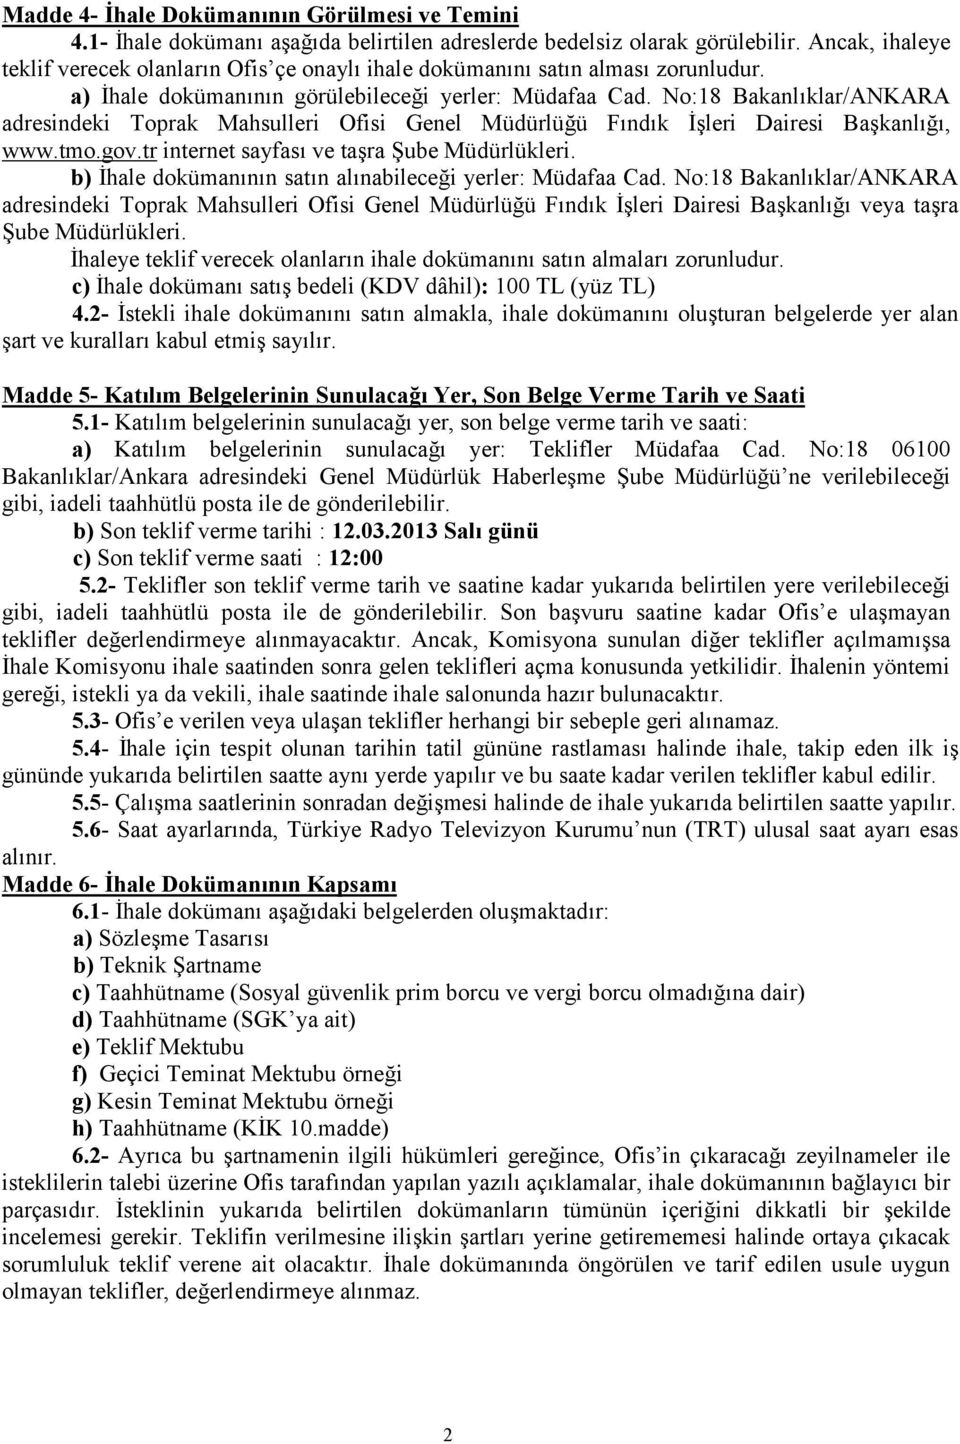 No:18 Bakanlıklar/ANKARA adresindeki Toprak Mahsulleri Ofisi Genel Müdürlüğü Fındık İşleri Dairesi Başkanlığı, www.tmo.gov.tr internet sayfası ve taşra Şube Müdürlükleri.